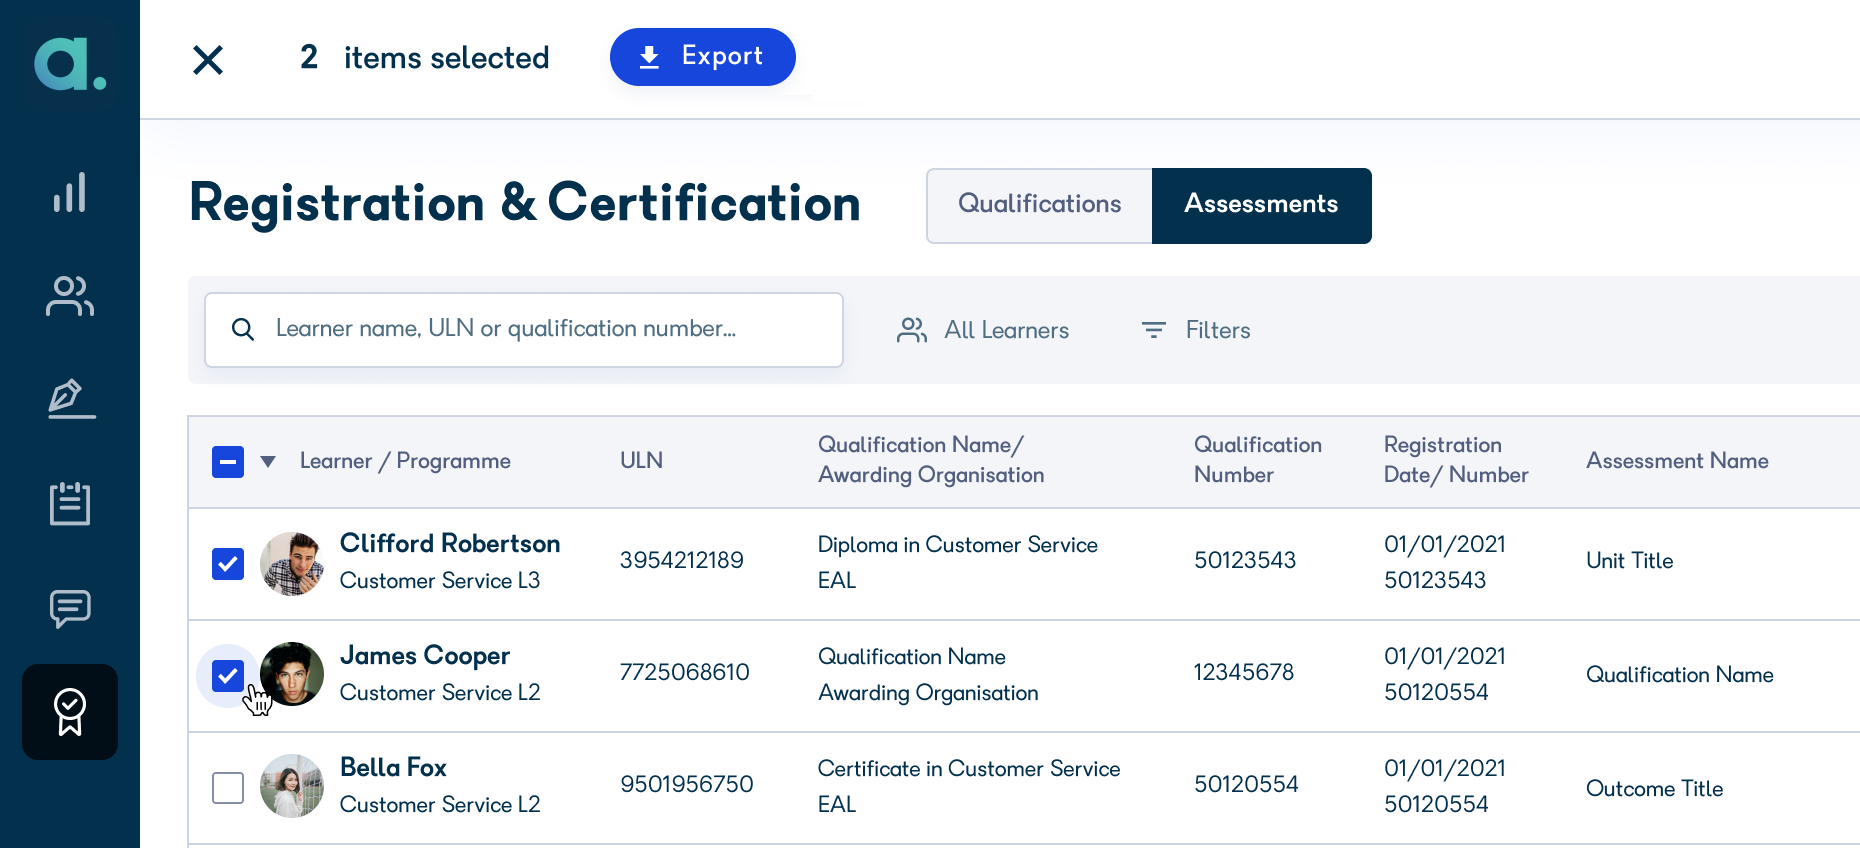 Registration_Certification__Assessments_08.png